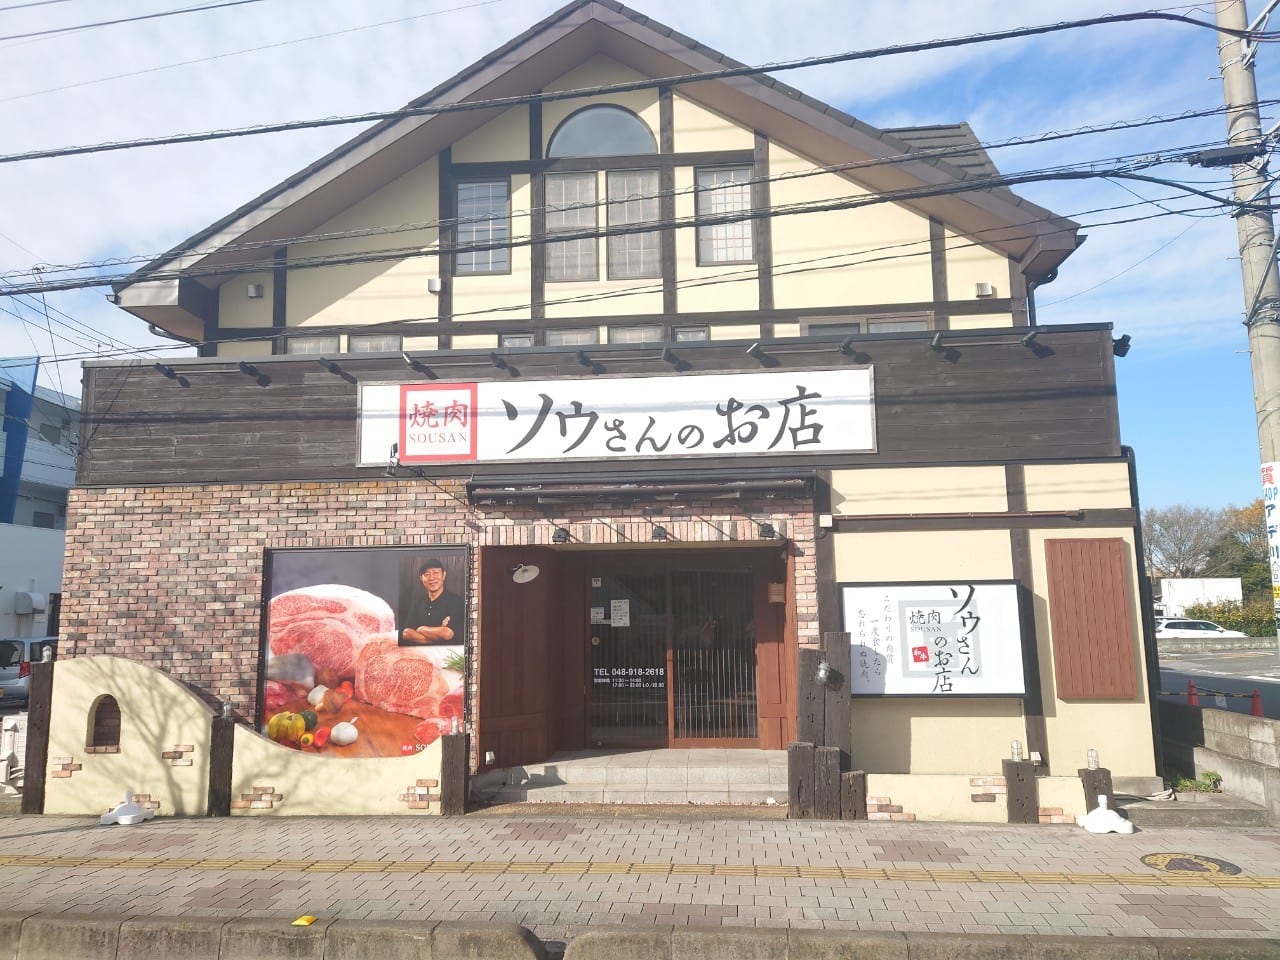 焼肉ソウさんのお店が開店していました。